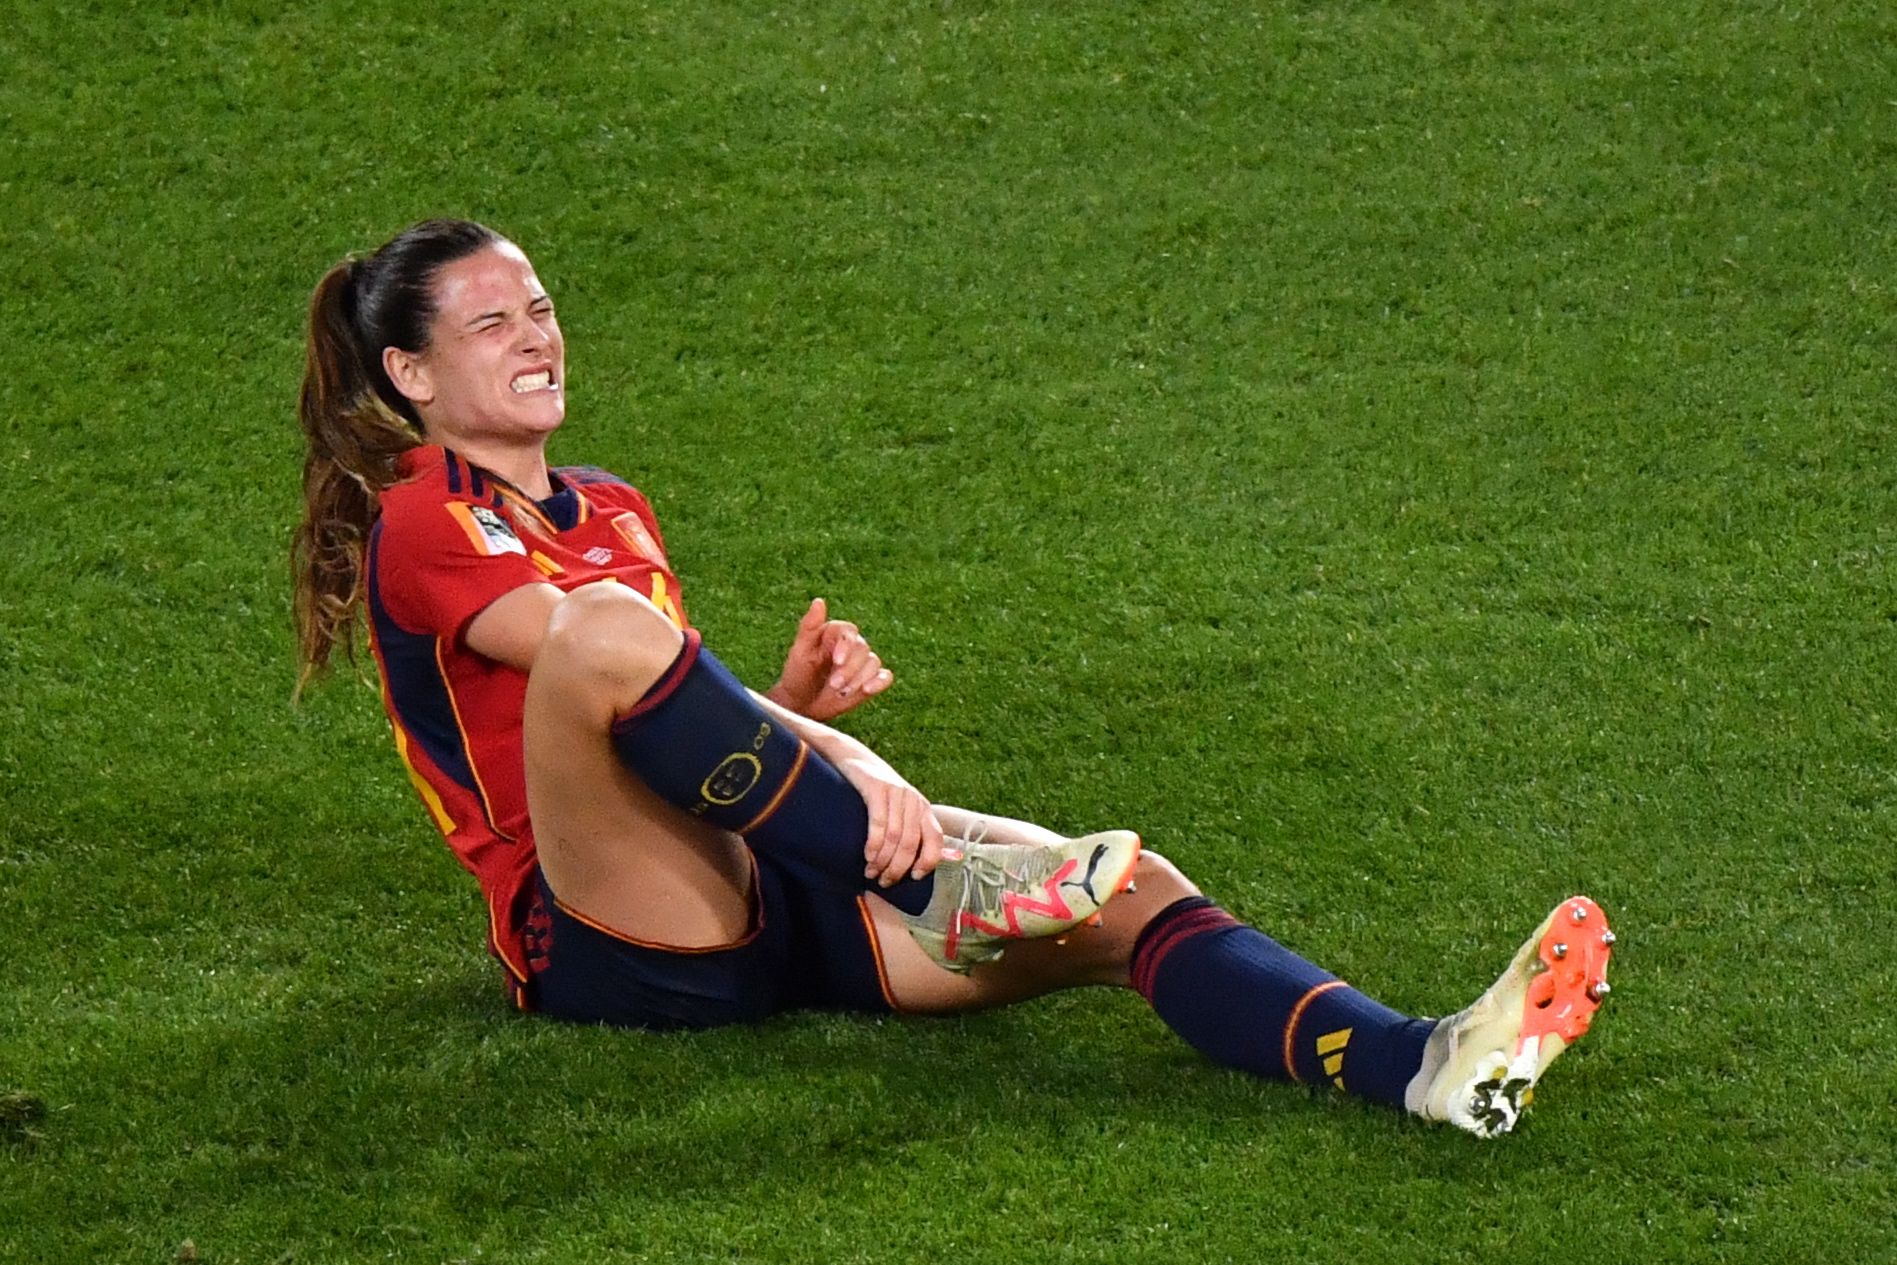 Les millors imatges de la selecció espanyola a la final del Mundial femení